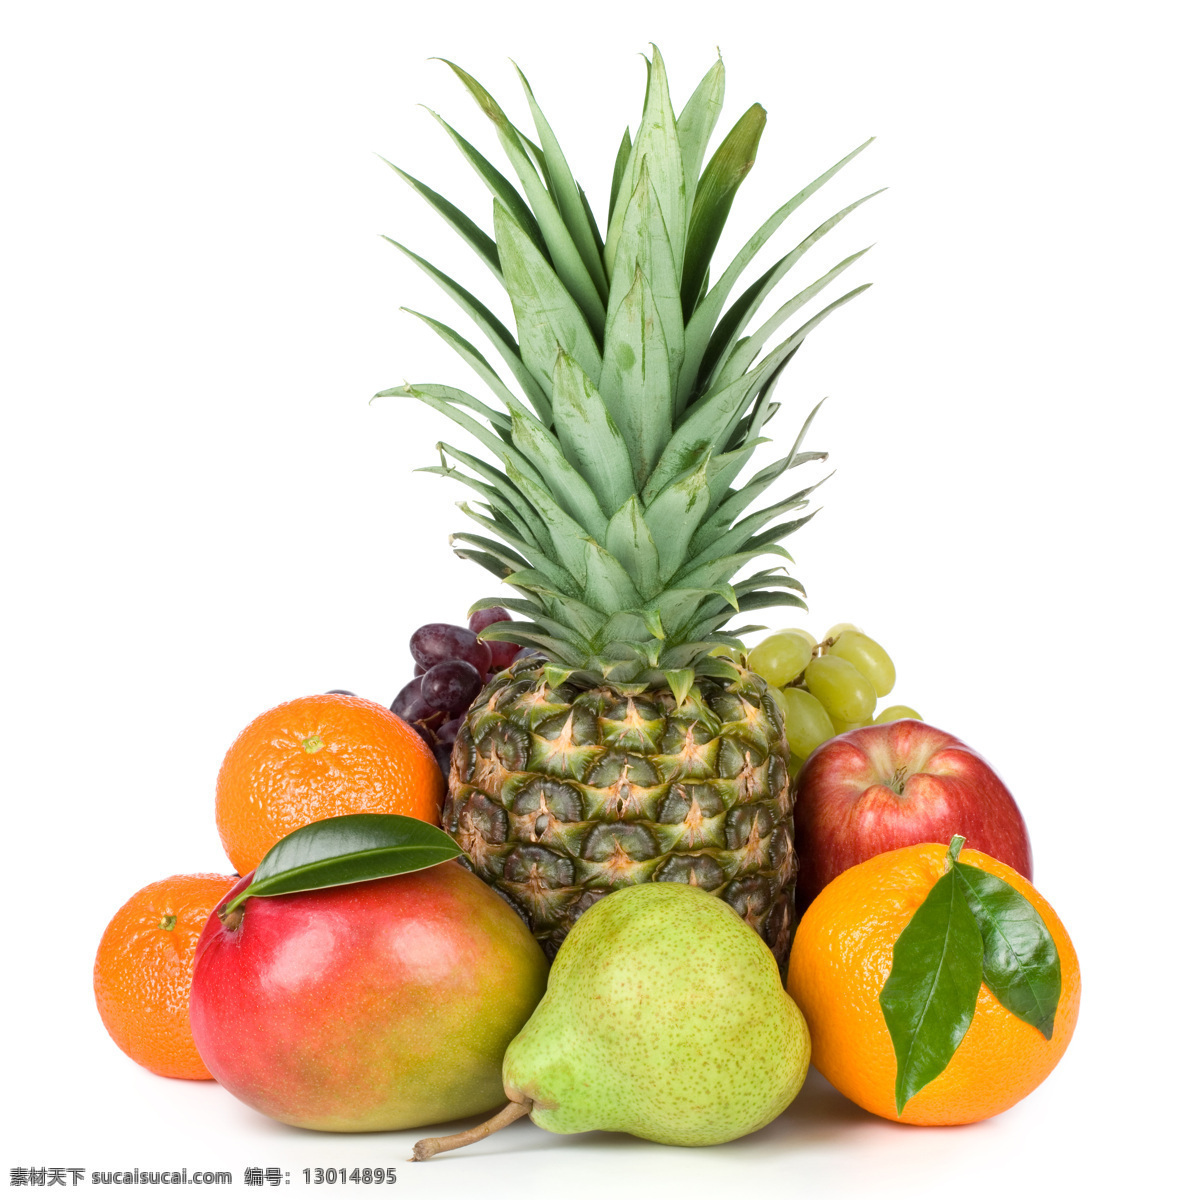 水果广告背景 菠萝 梨 橙子 苹果 新鲜水果 水果 水果摄影 水果素材 水果广告 广告素材 水果蔬菜 餐饮美食 白色